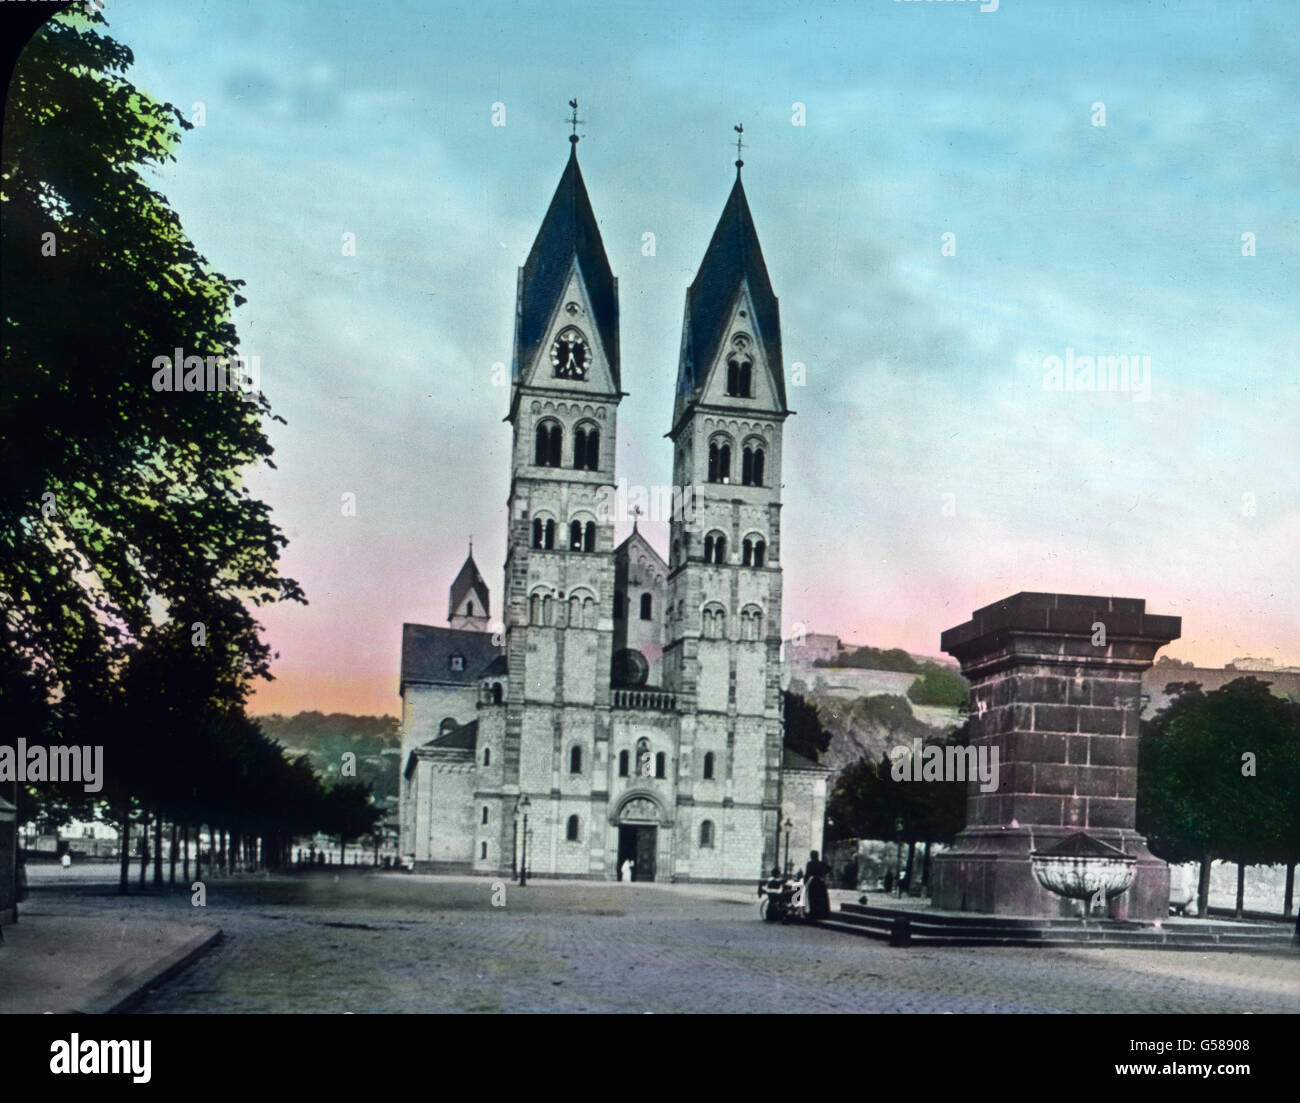 Ein wichtiges Dokument romanischer Baukunst am Mittelrhein ist die St. Castorkirche zu Koblenz. Die auf den flüchtigen ersten Blick einheitliche Erscheinung täuscht; die Baugeschichte ist voller Probleme. Im Ganzen erkennt man einen durchgreifenden Umbau unter Erzbischof Johann I. von Trier in den Jahren 1190  1212. Ölter sind im heutigen Bestande das Chorquadrat und die Westtürme. Auffallend gering ist der Abstand der Türme untereinander. Ihre sehr altertümlichen Zierformen, Pilasterkapitelle in den untersten Geschossen weisen auf das 10. Jahrhundert hin. Europe, Germany, architecture, church Stock Photo